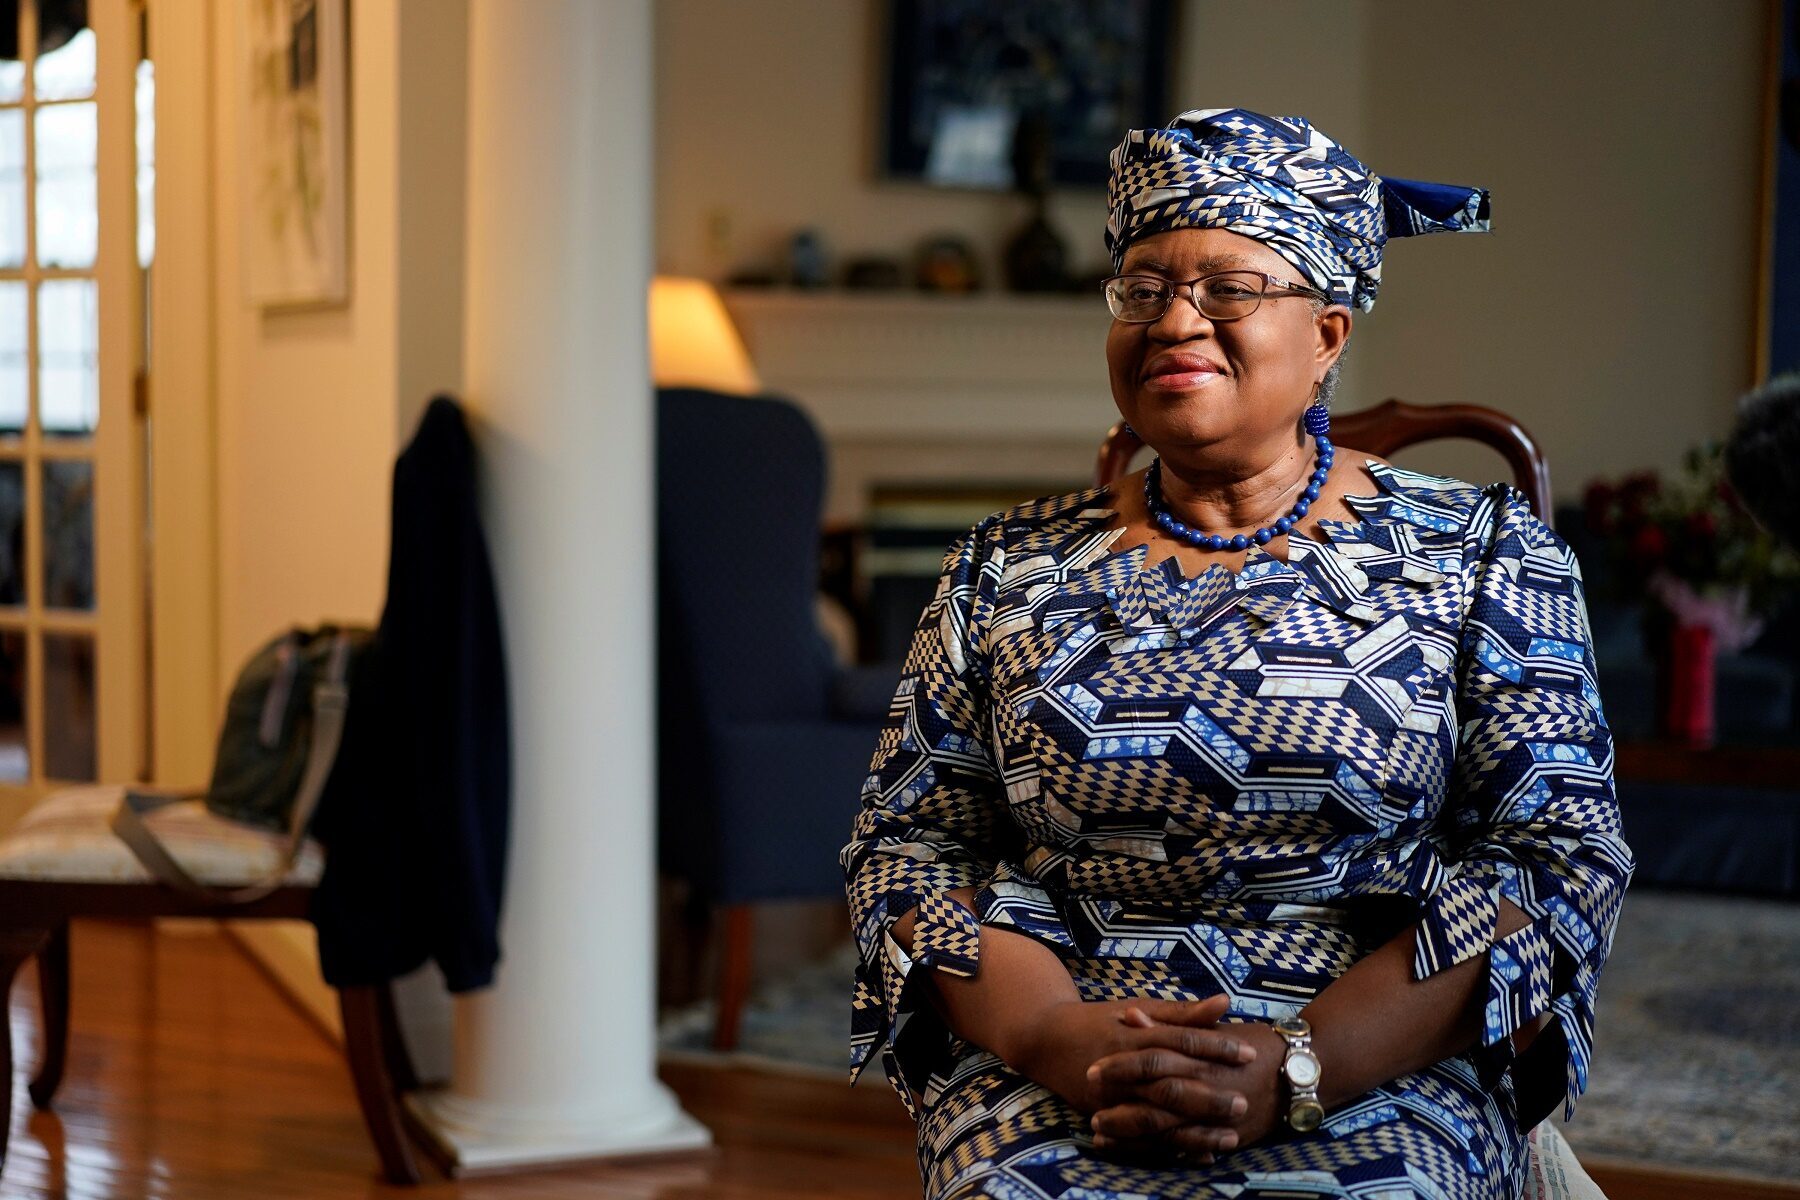 Tổng giám đốc WTO Ngozi Okonjo-Iweala trả lời báo chí hôm 15/2/2021. Ảnh: Reuters